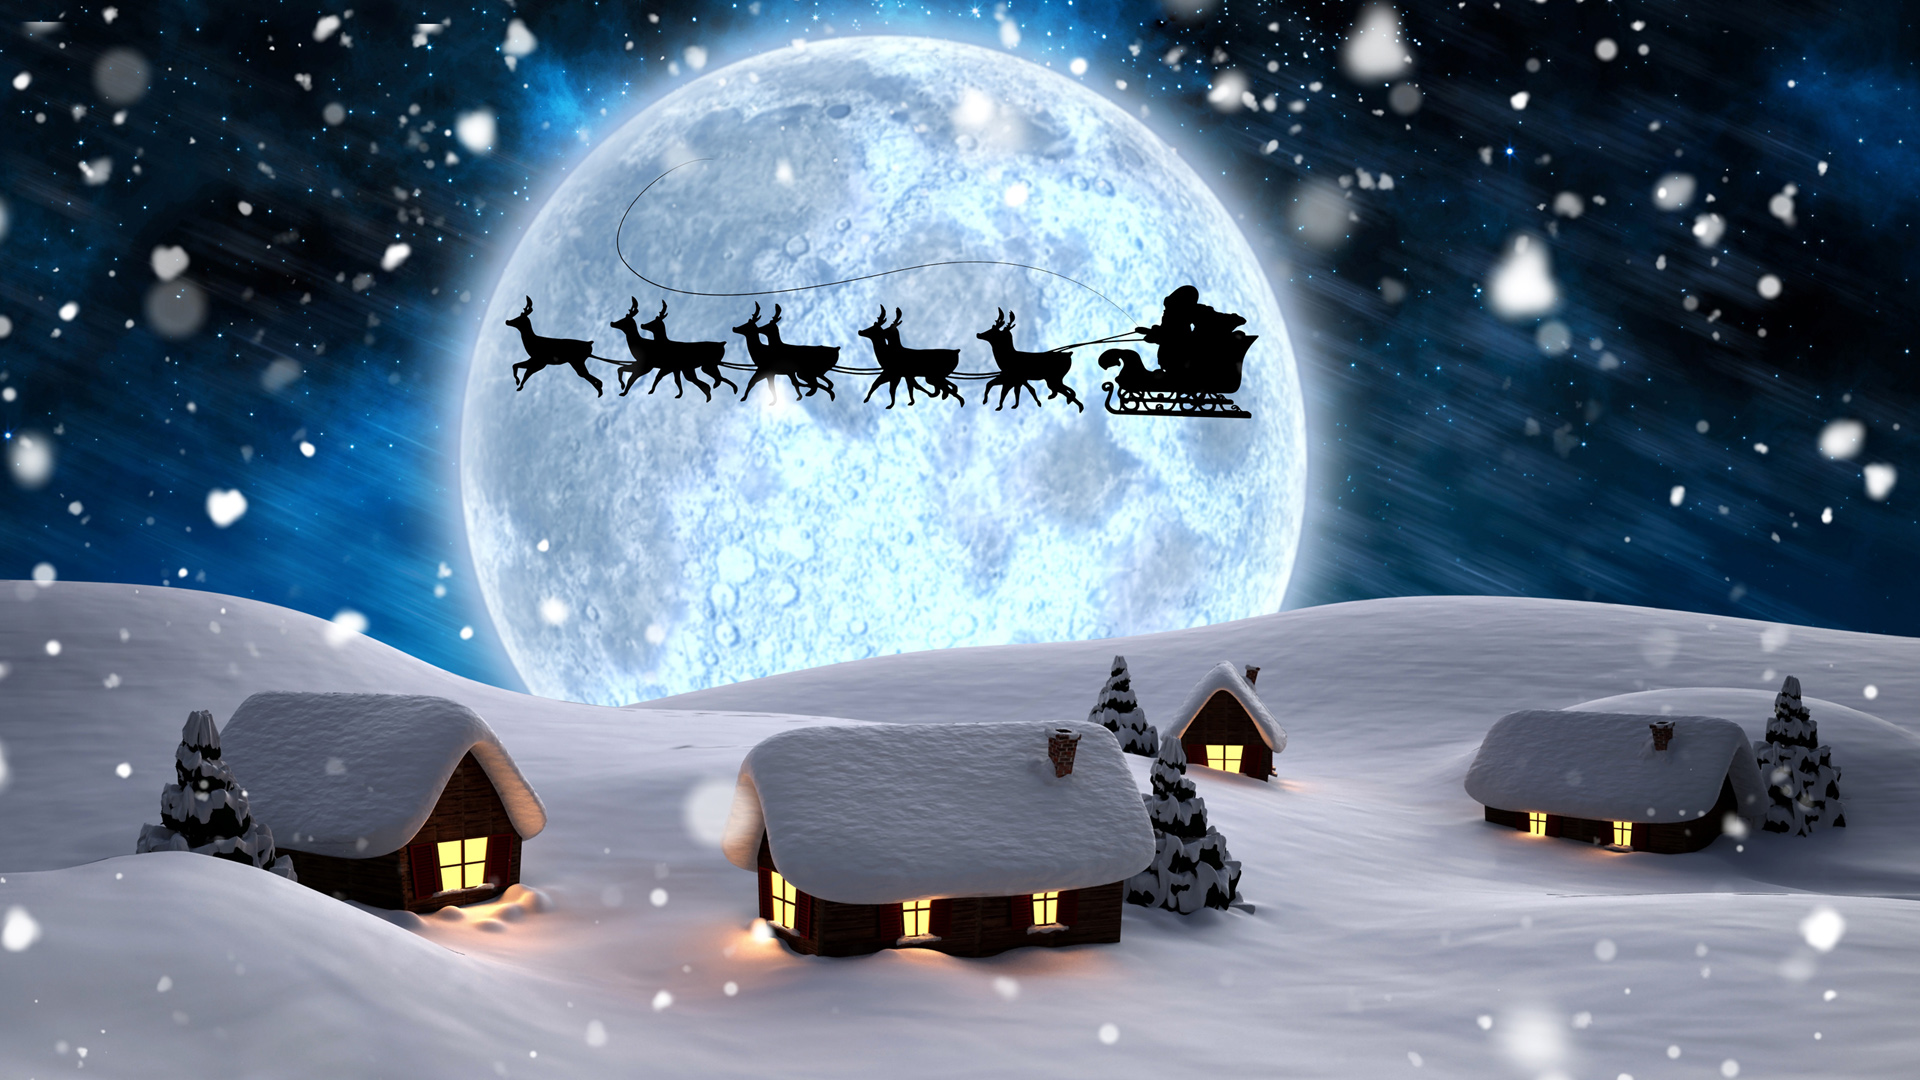 圣诞老人,鹿,雪橇,夜晚,月亮,灯光,雪花,树木,冬天,雪,房子,桌面壁纸